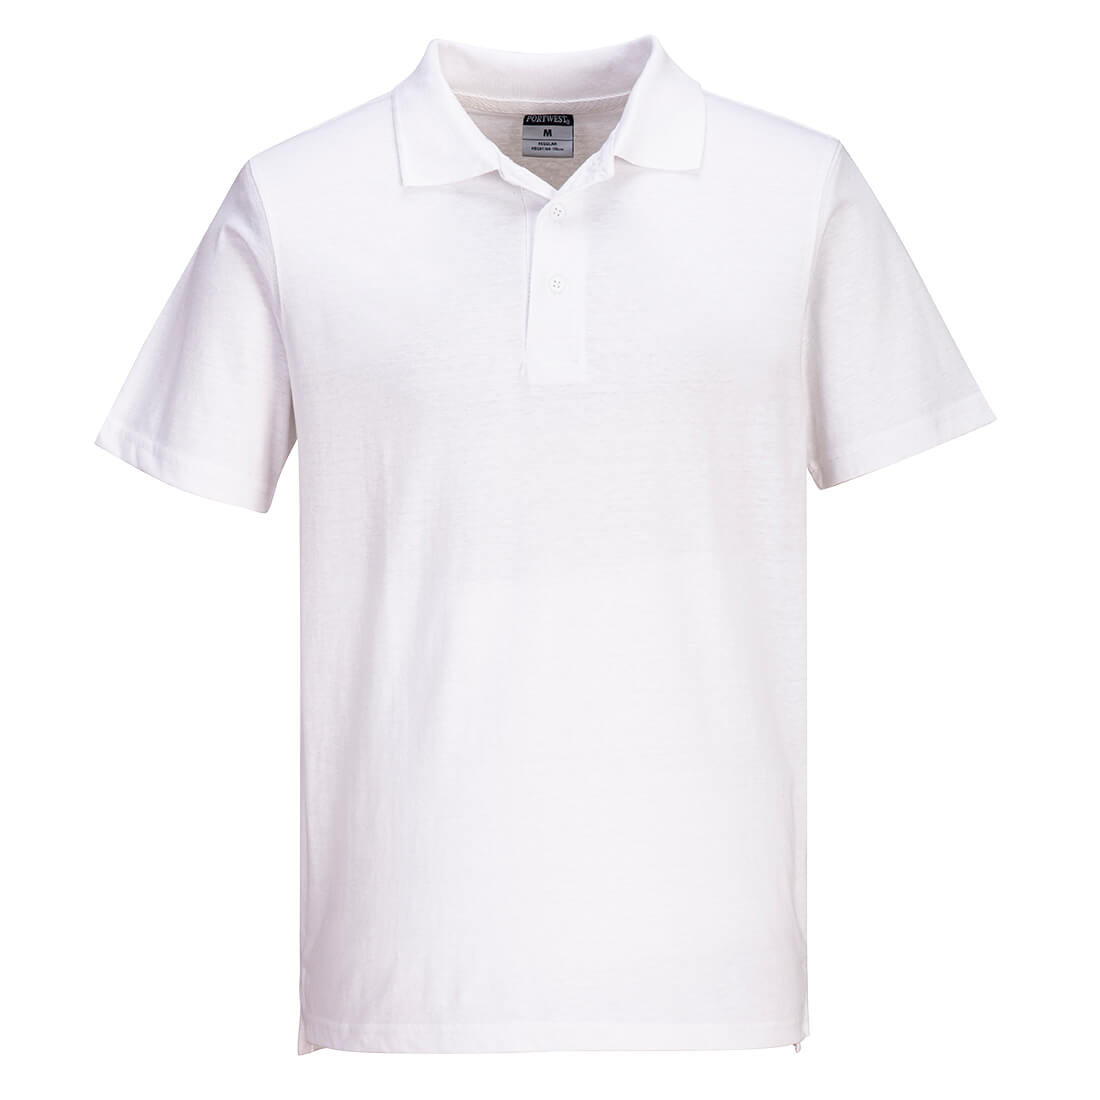 Polo Jersey léger - Les vêtements de protection